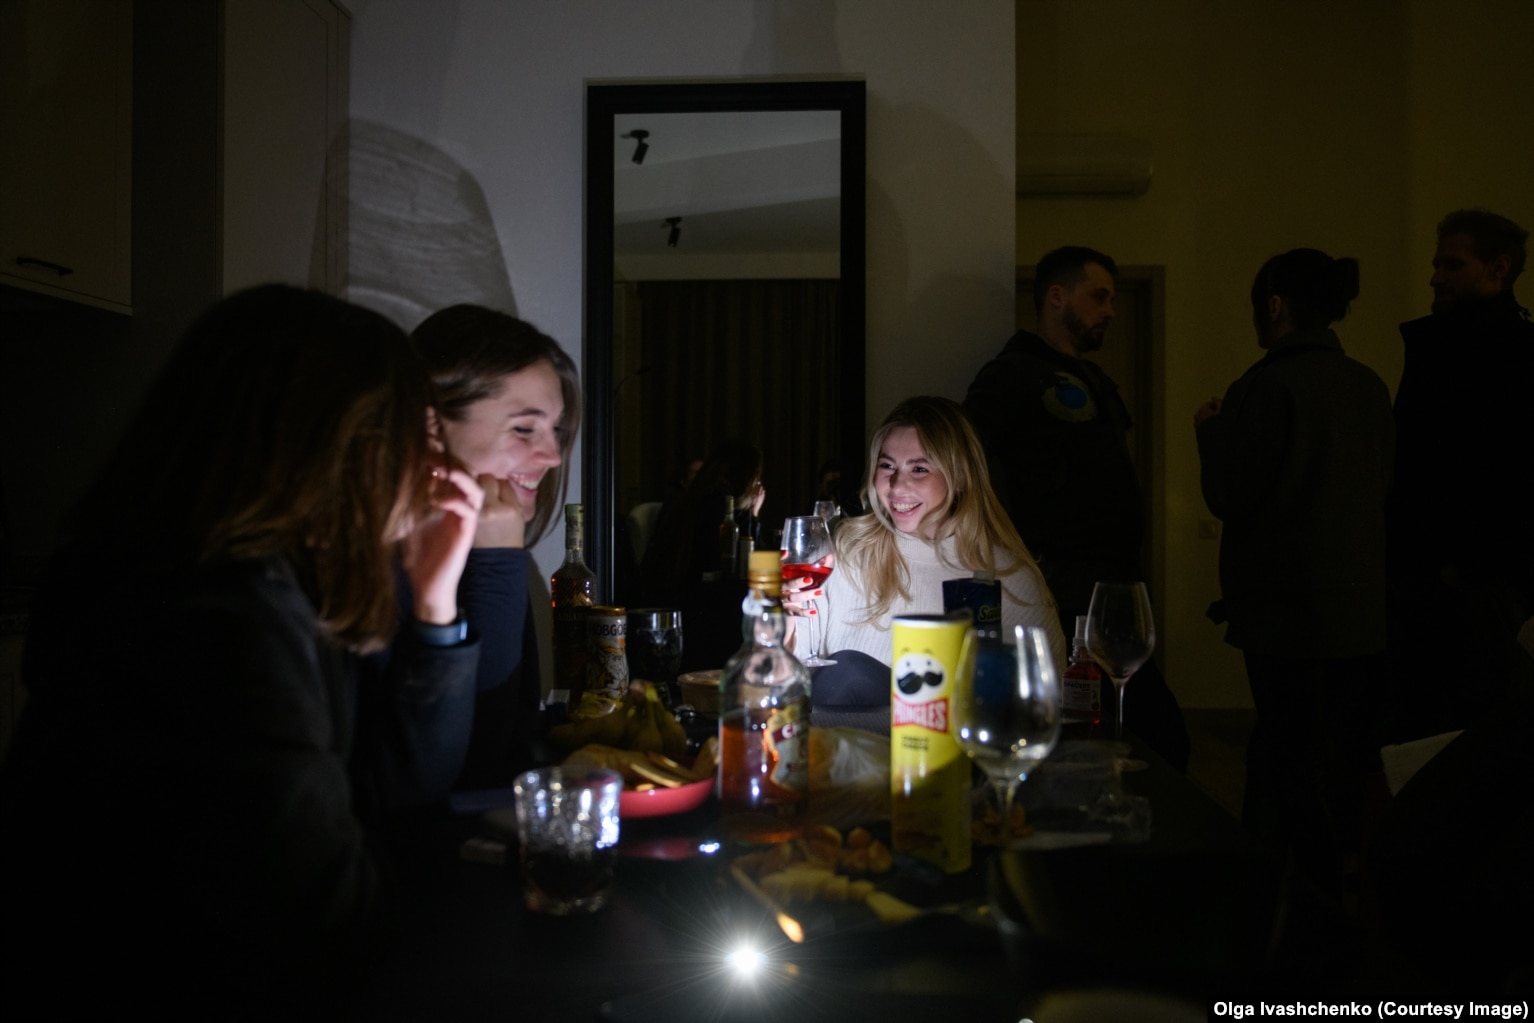 Një festë në një apartament nën çatinë e një ndërtese të lartë në Harkiv gjatë një ndërprerjeje të rrymës. Për shkak të mungesës së energjisë elektrike, ashensori nuk funksiononte dhe të ftuarve iu desh të ngjitnin 24 shkallare për të shkuar në takim.